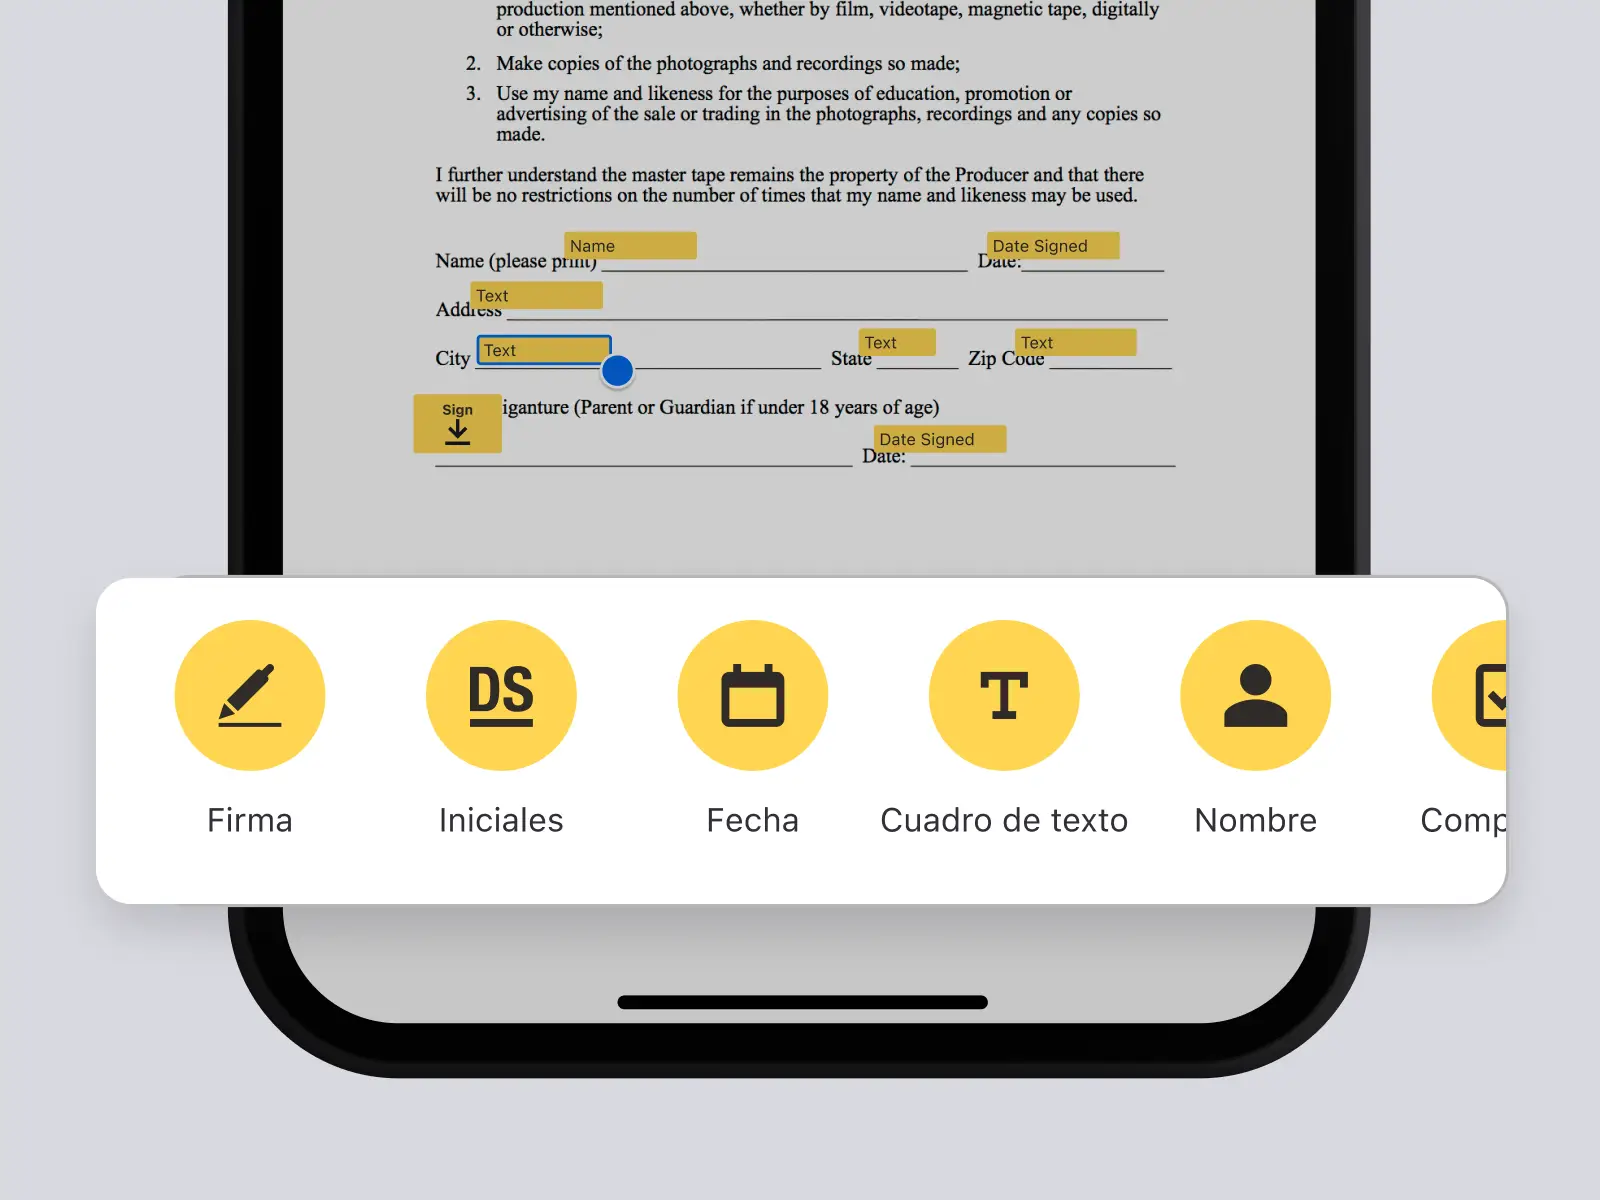 Pantalla del teléfono que muestra un documento en la aplicación DocuSign con opciones para agregar una firma, iniciales, fecha y más